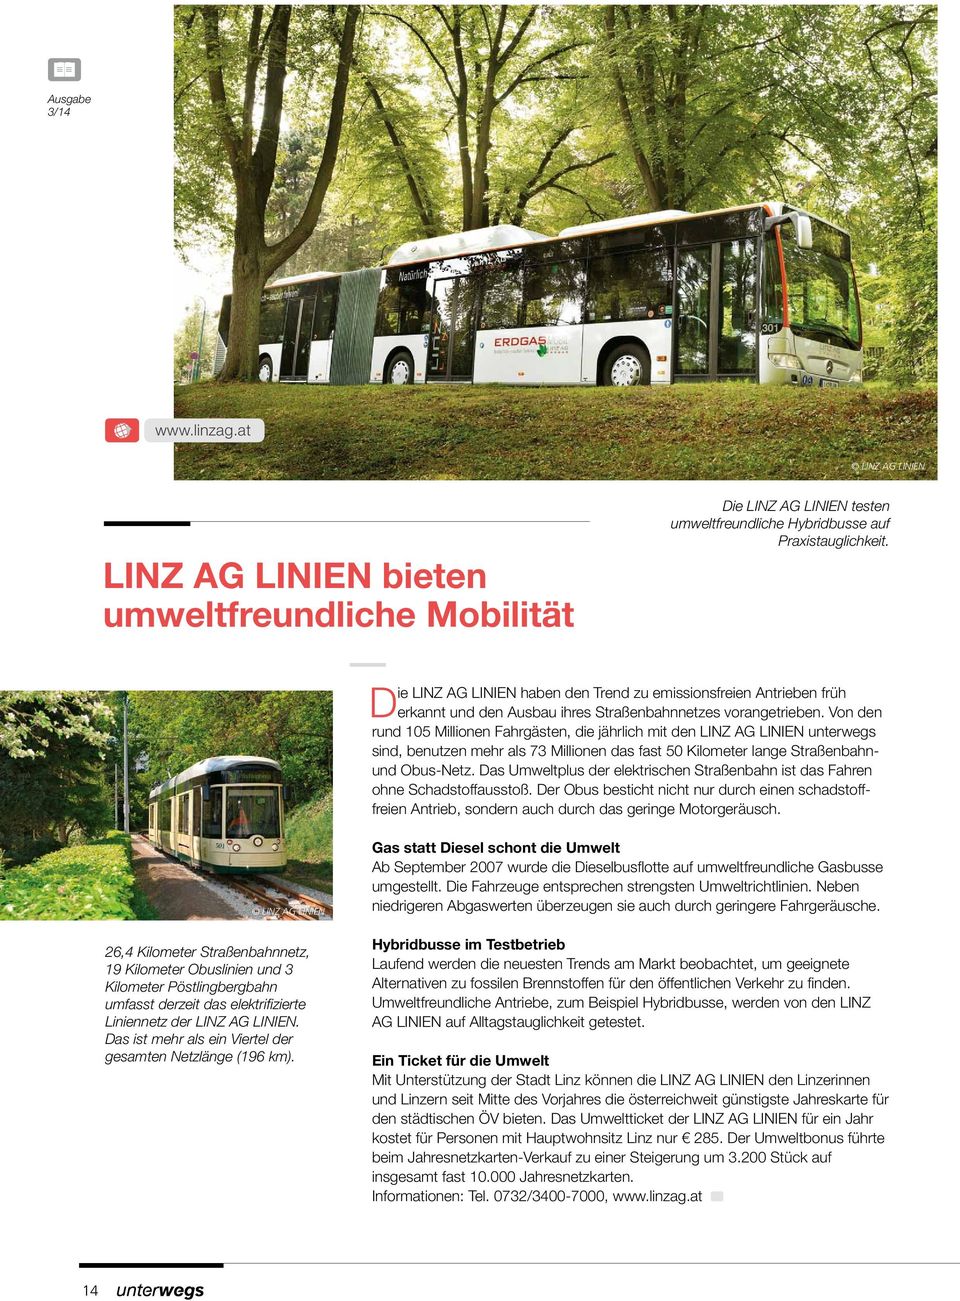 Von den rund 105 Millionen Fahrgästen, die jährlich mit den LINZ AG LINIEN unterwegs sind, benutzen mehr als 73 Millionen das fast 50 Kilometer lange Straßenbahnund Obus-Netz.